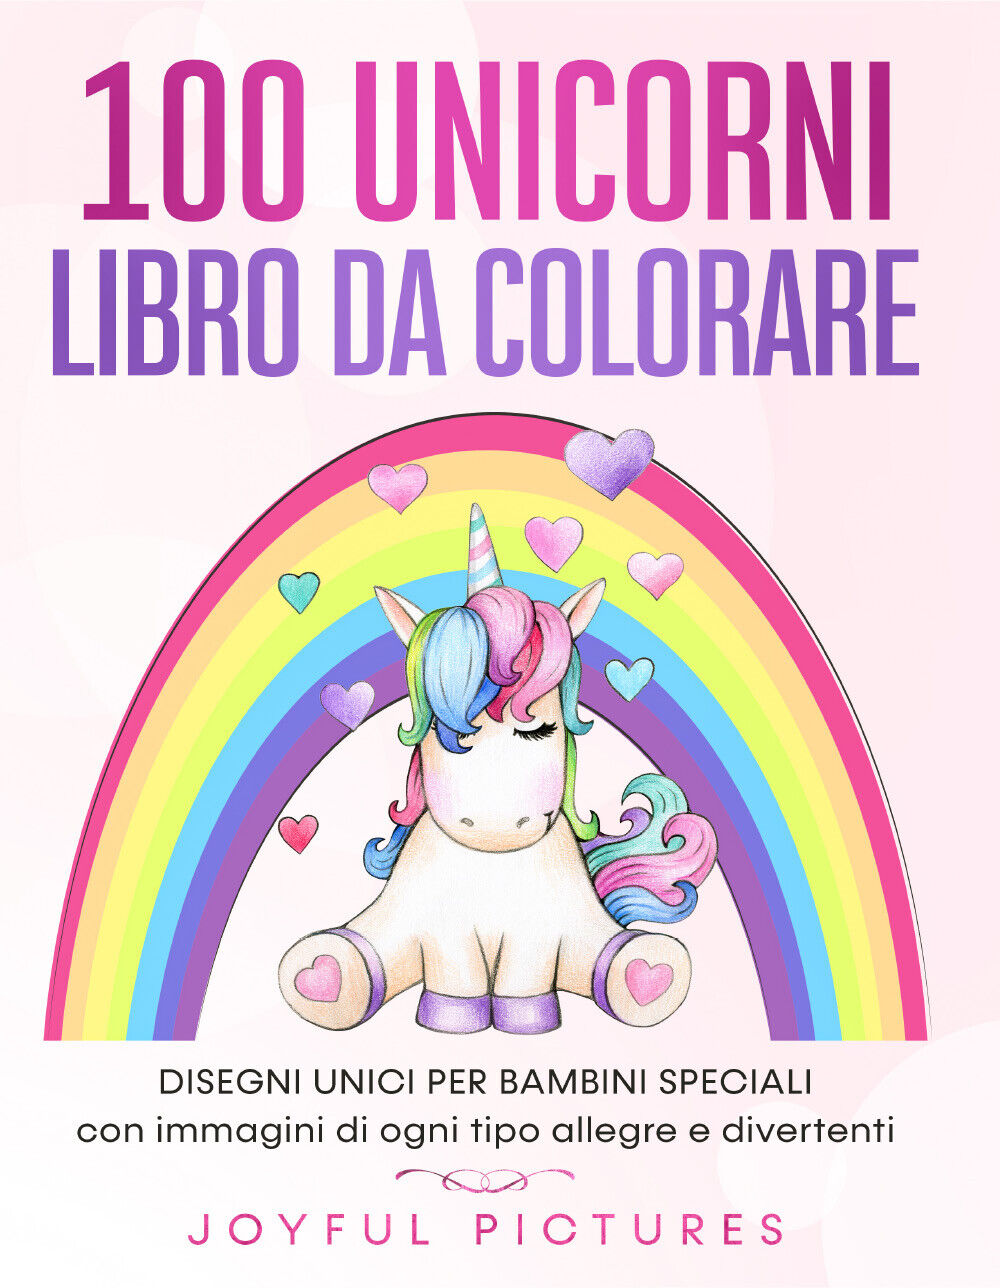 100 unicorni. Libro da colorare. Disegni unici per bambini speciali con immagini libro usato